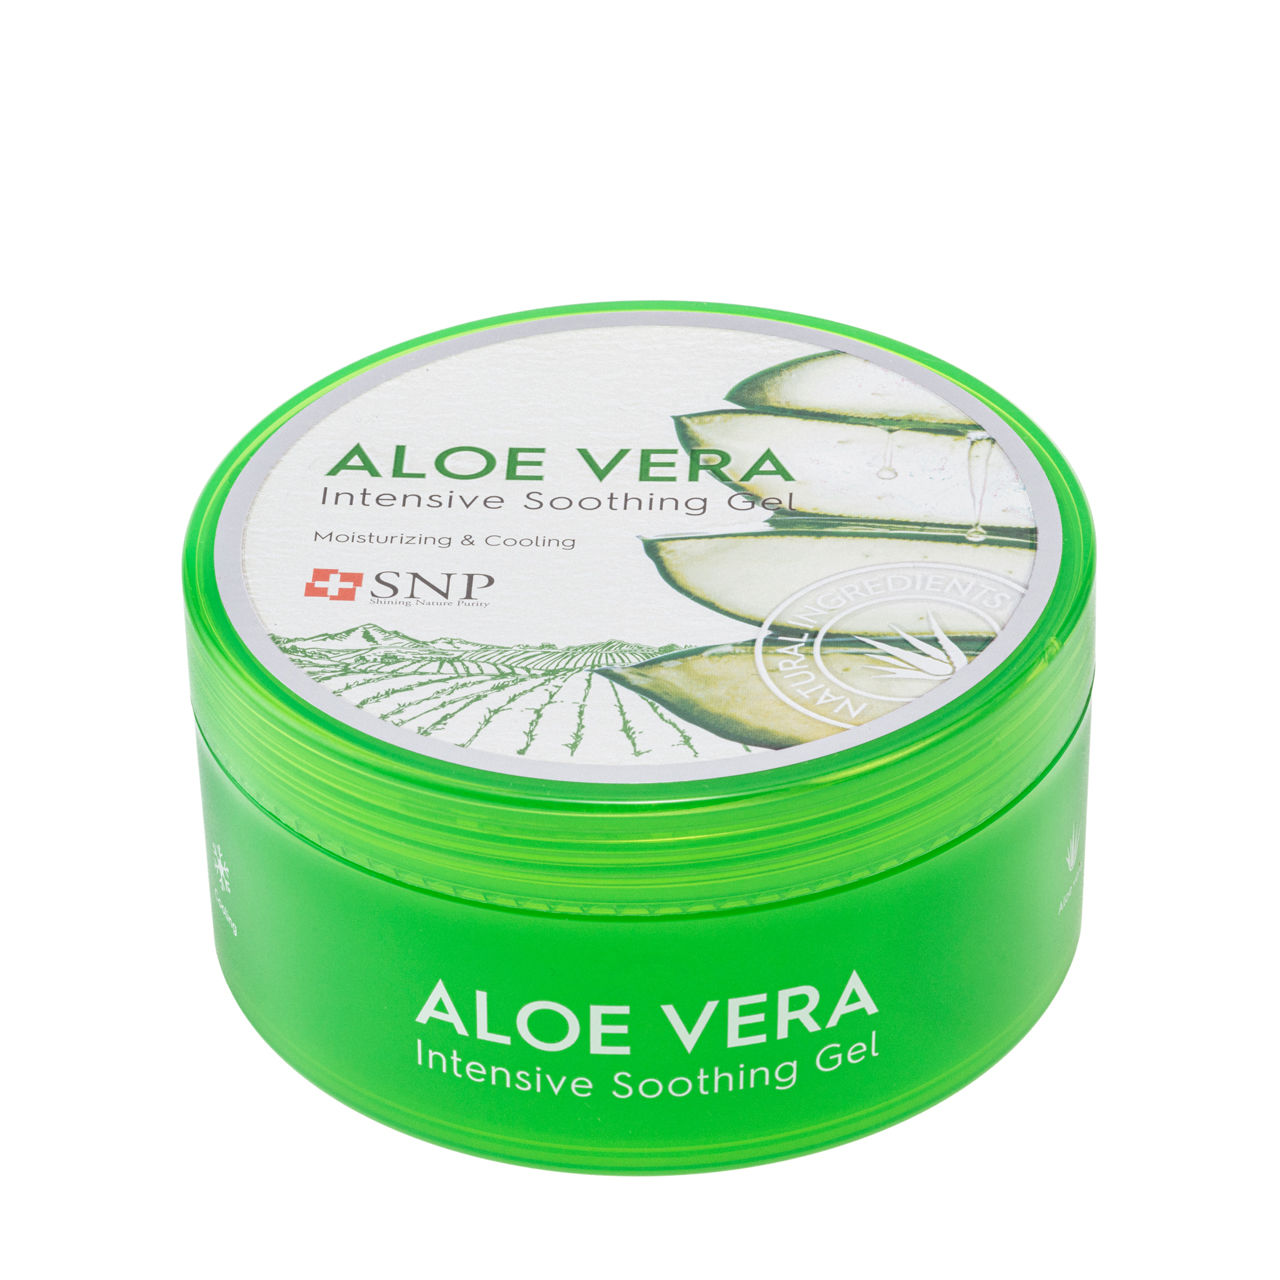 SNP Aloe Vera 97% Soothing Gel